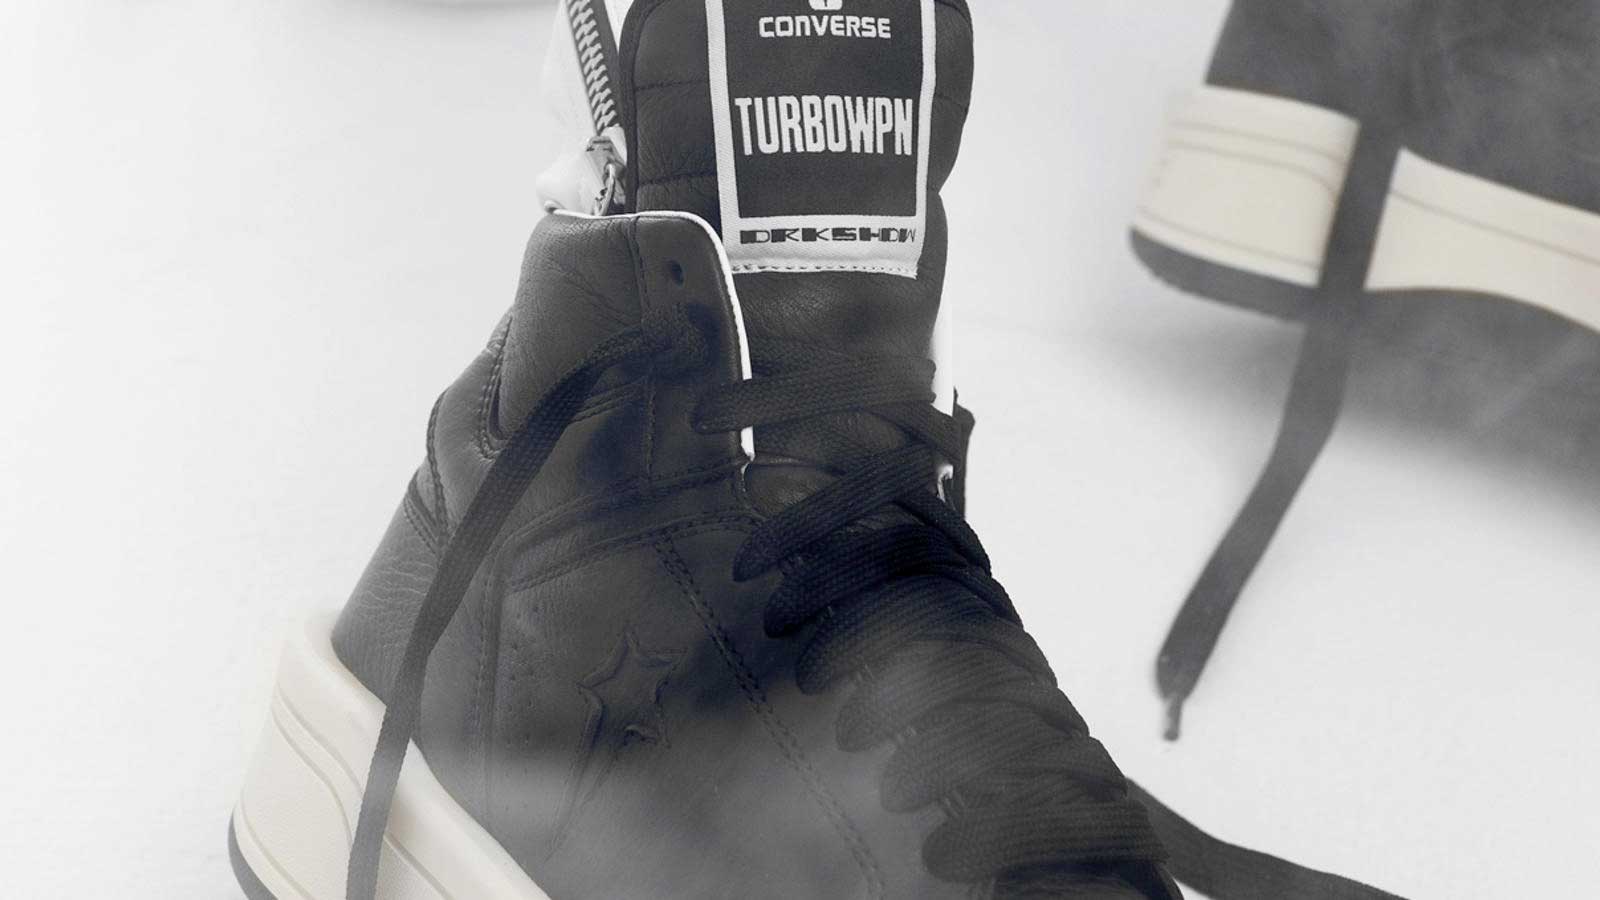 Las nuevas zapatillas Converse de Rick Owens: Turbowpn